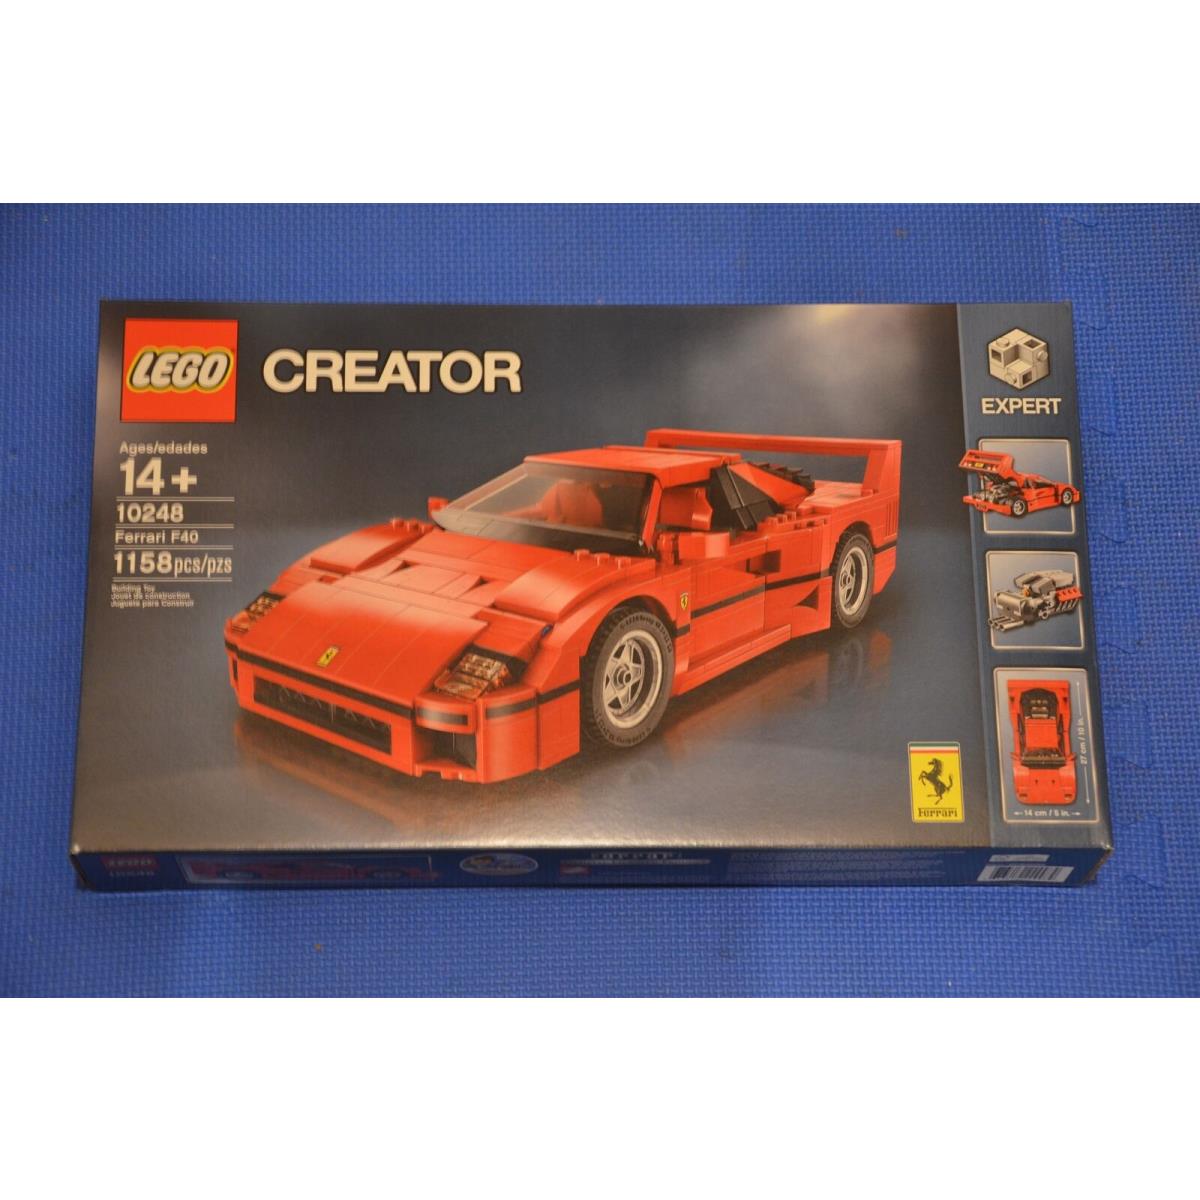 Lego 10248 Creator Expert Ferrari F40 Set